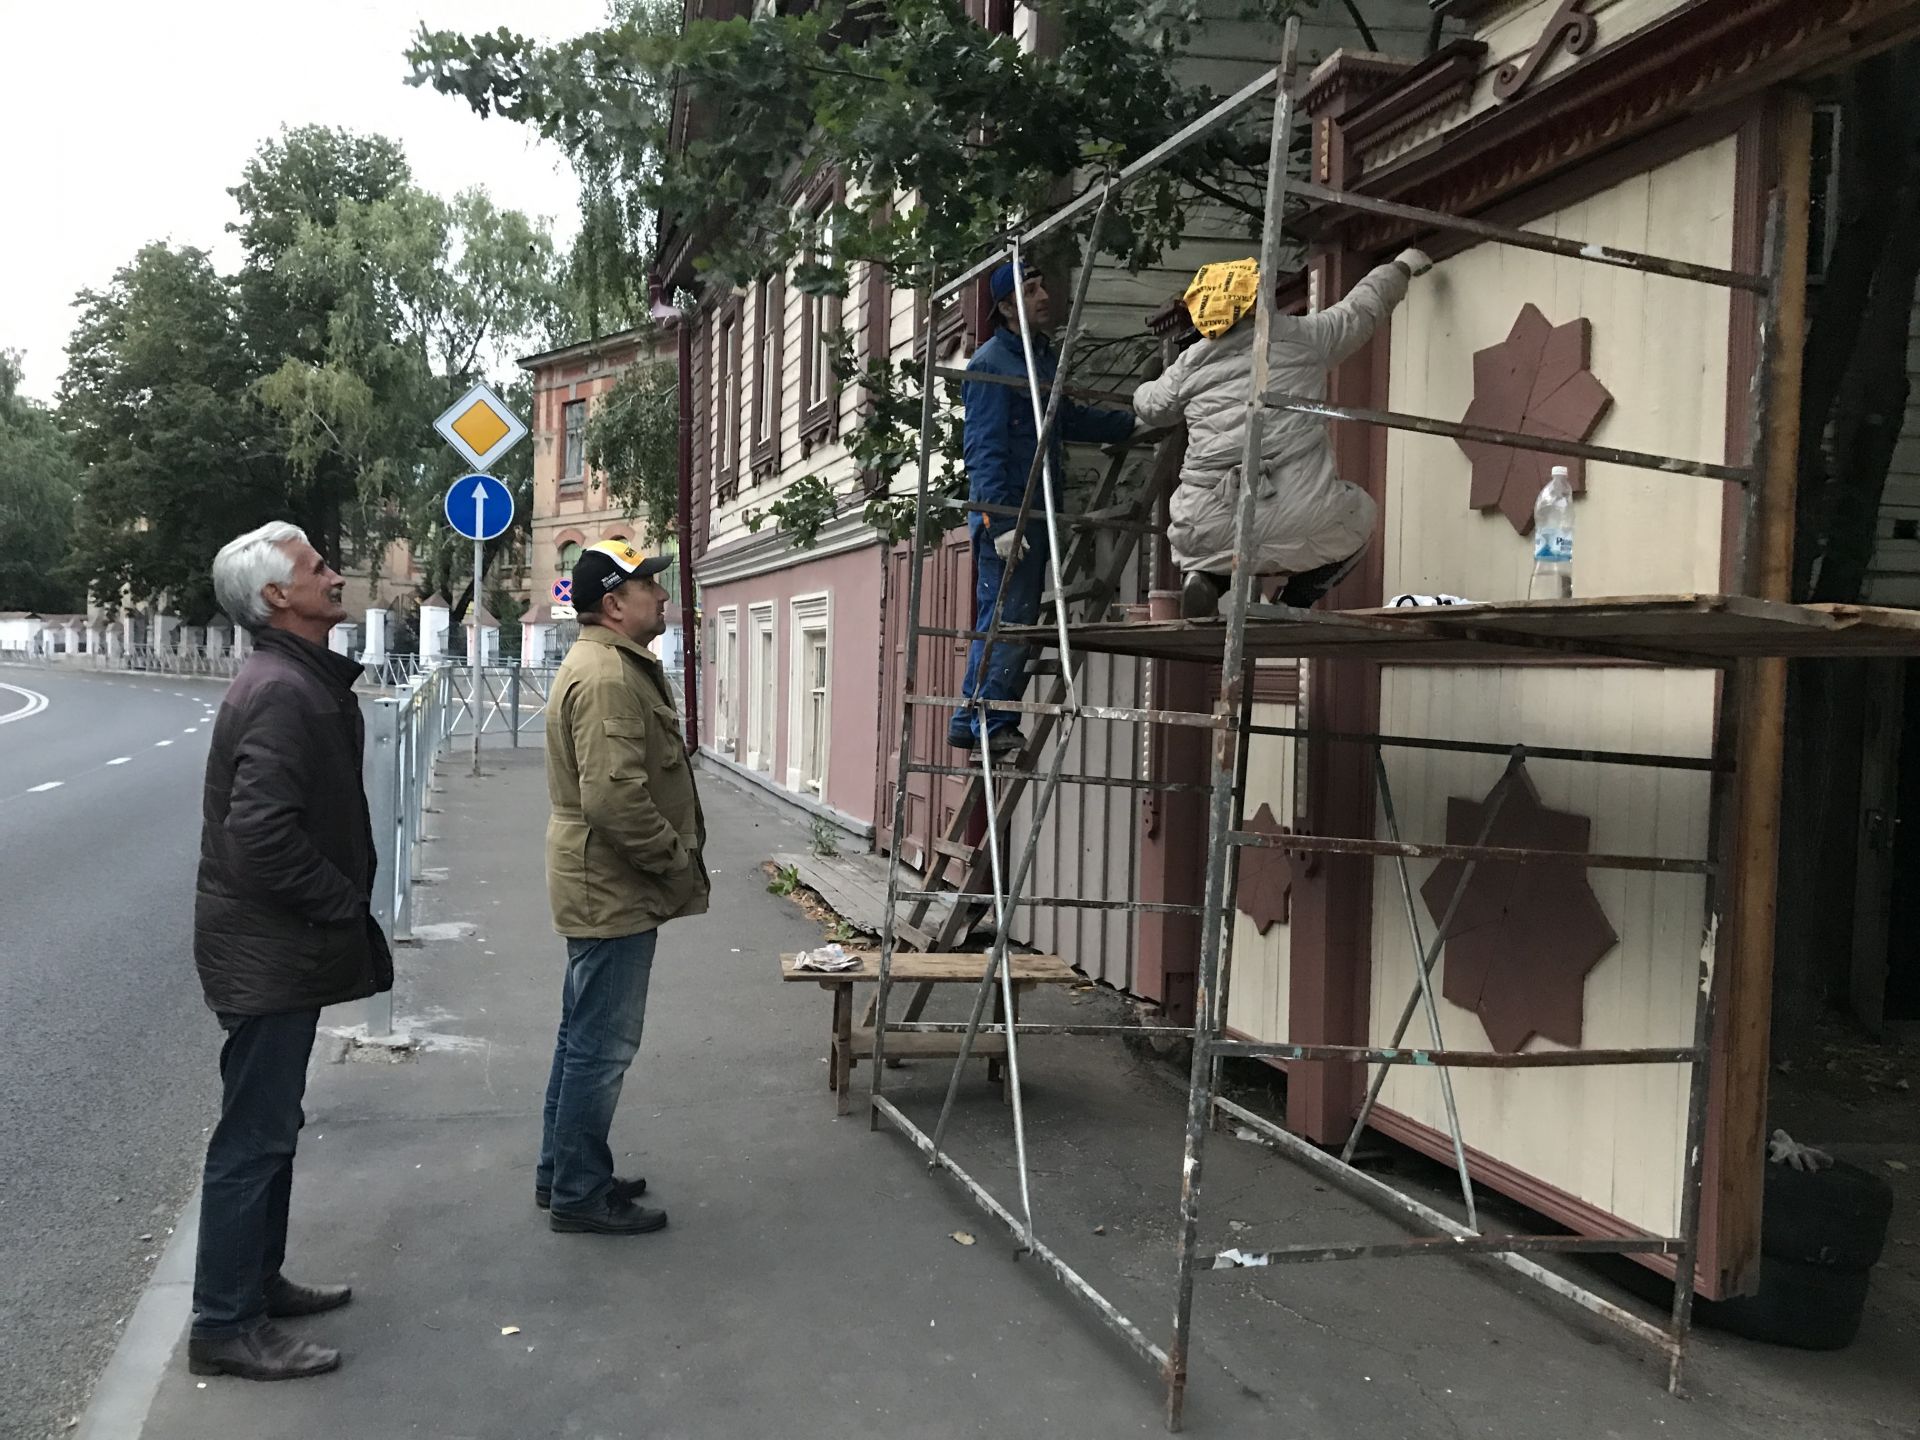 Фестиваль Тома Сойера в Казани: волонтёры закончили всё на Доме Беркутова и не скучают без работы. 28 августа 2019